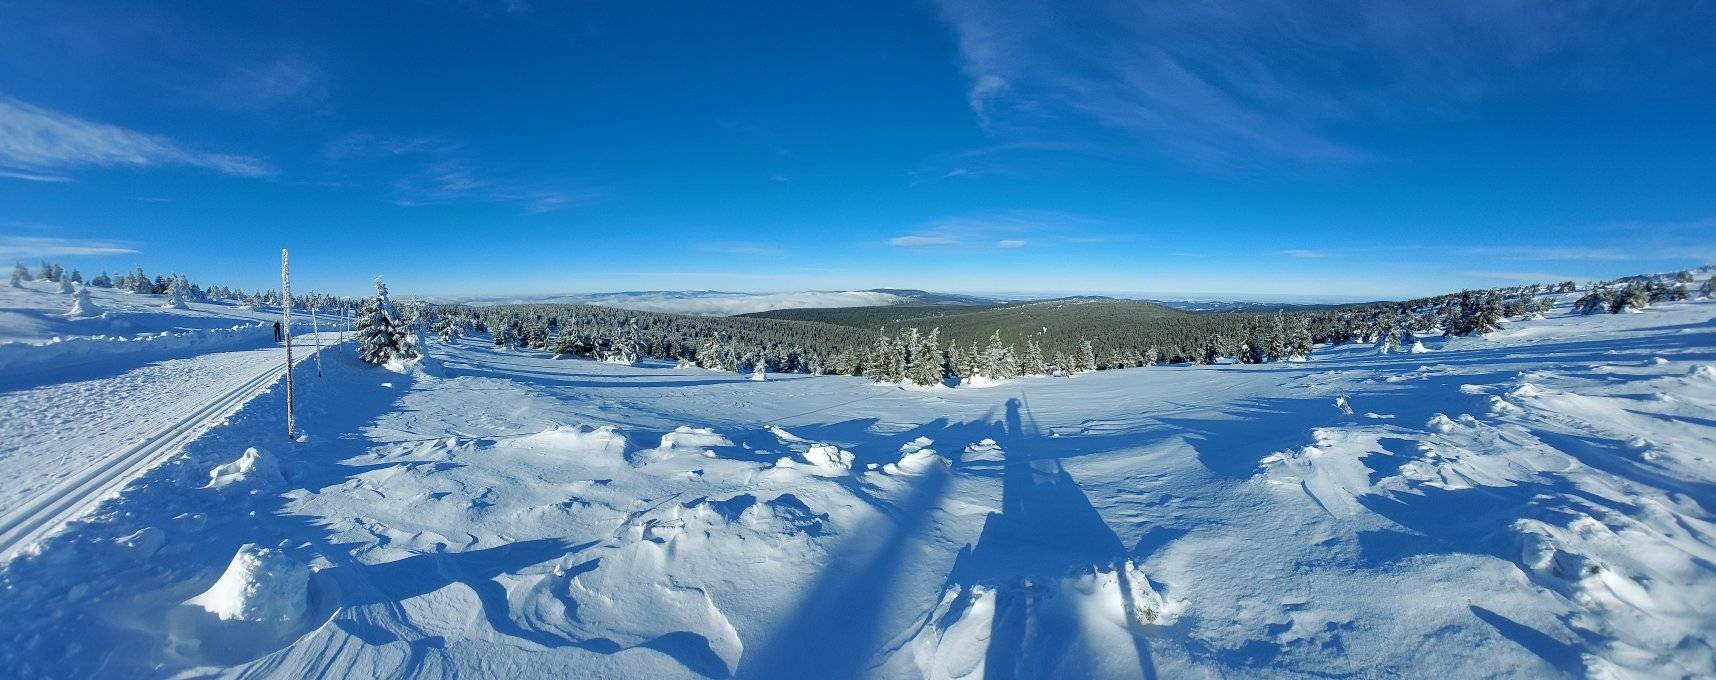 Kouzelnou zimní atmosféru si vychutnáte nejen na sjezdovkách ale i na skialpech a stovkách km upravených běžeckých tras.